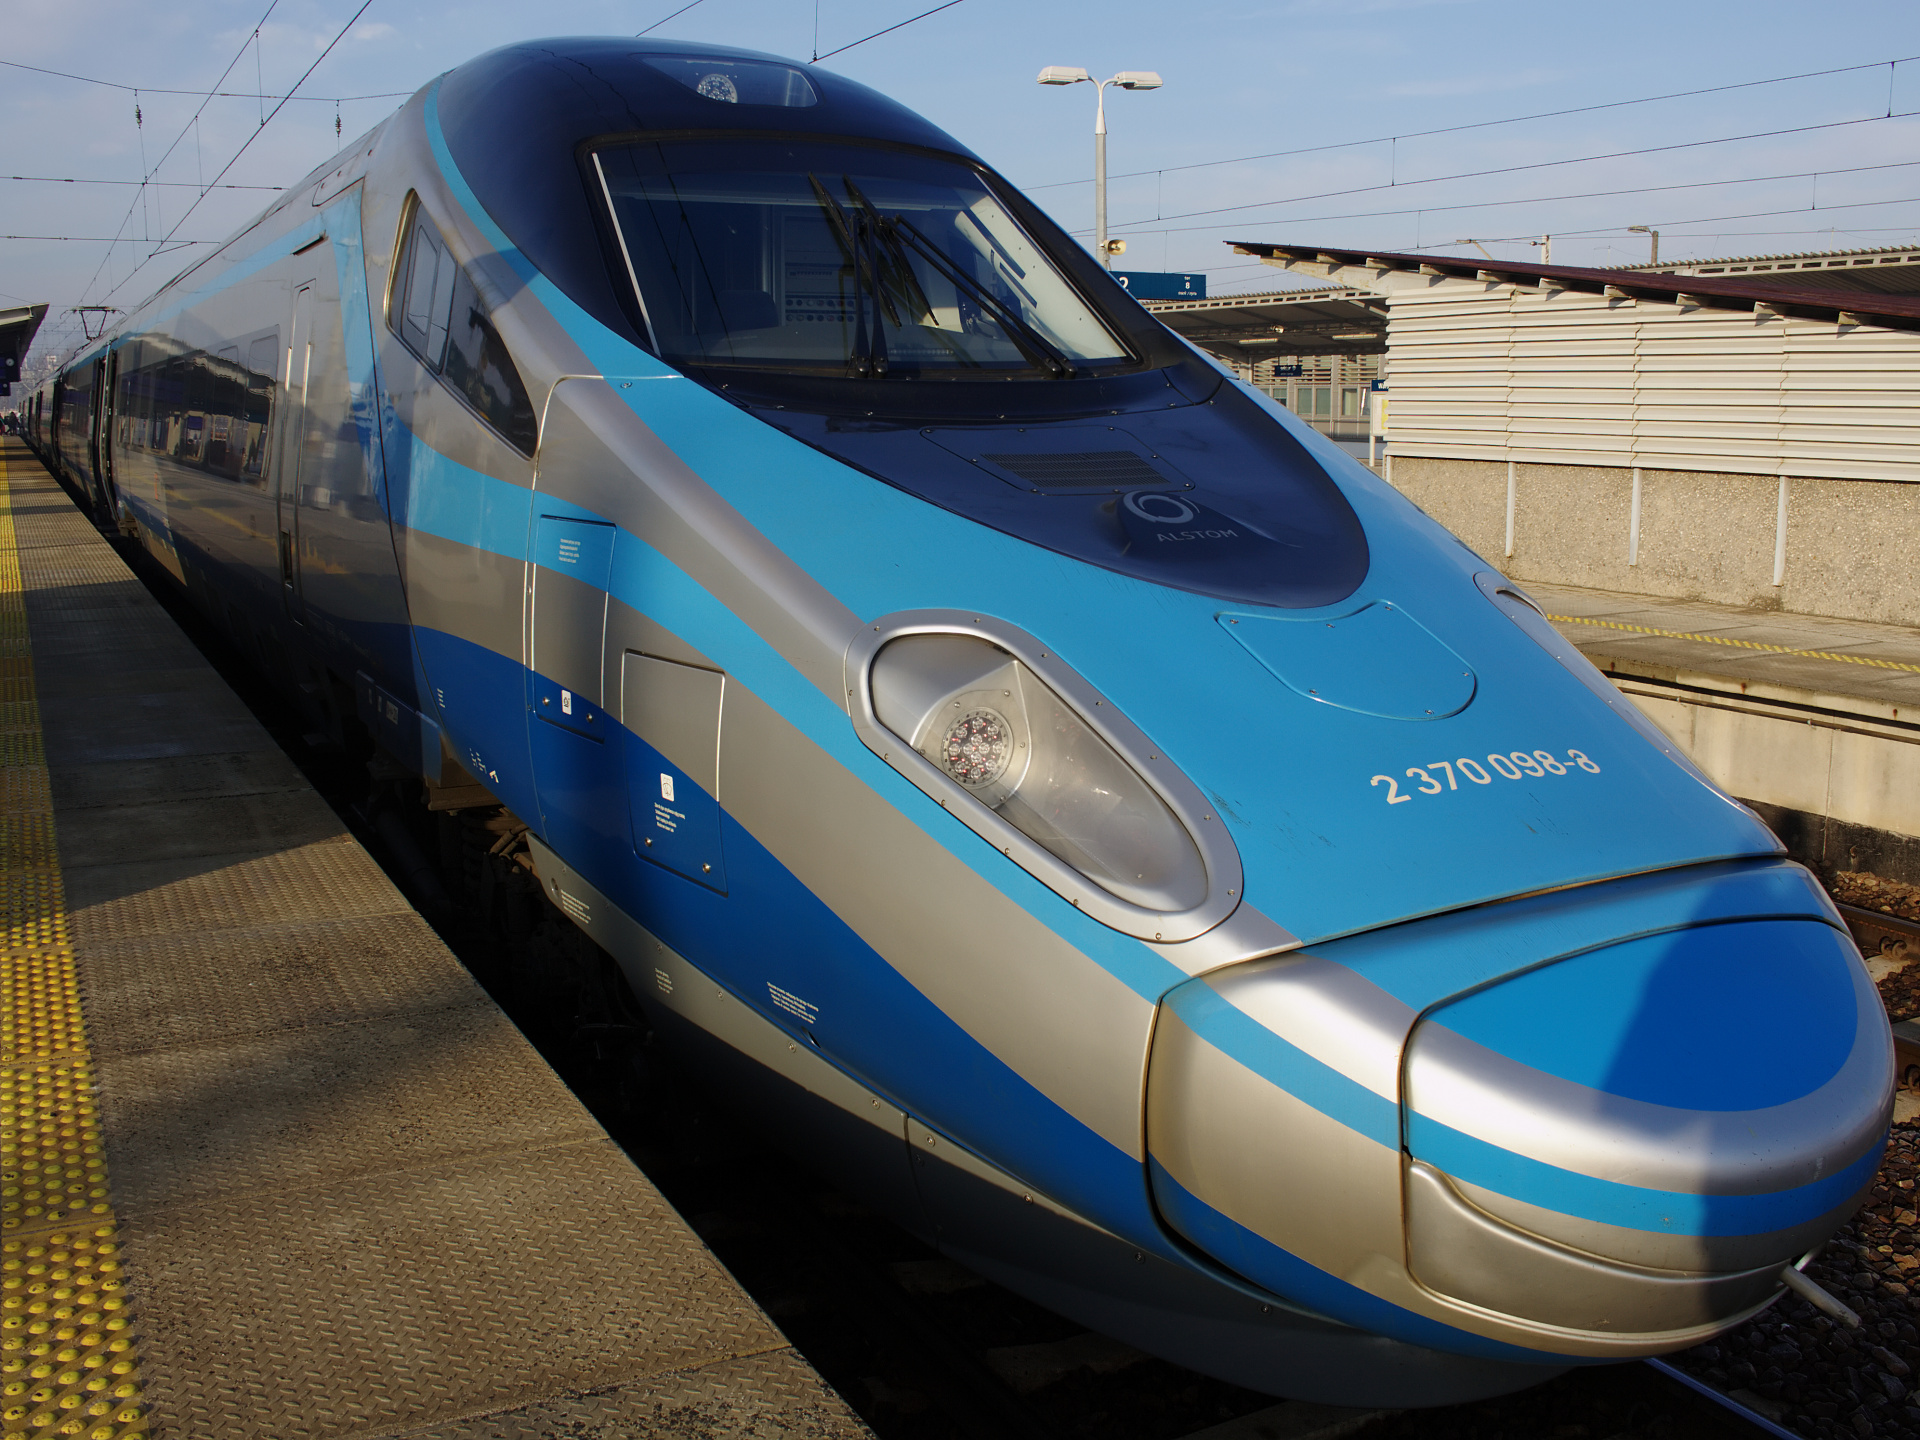 ED250-014 (Pojazdy » Pociągi i lokomotywy » Alstom ETR 610 Pendolino)